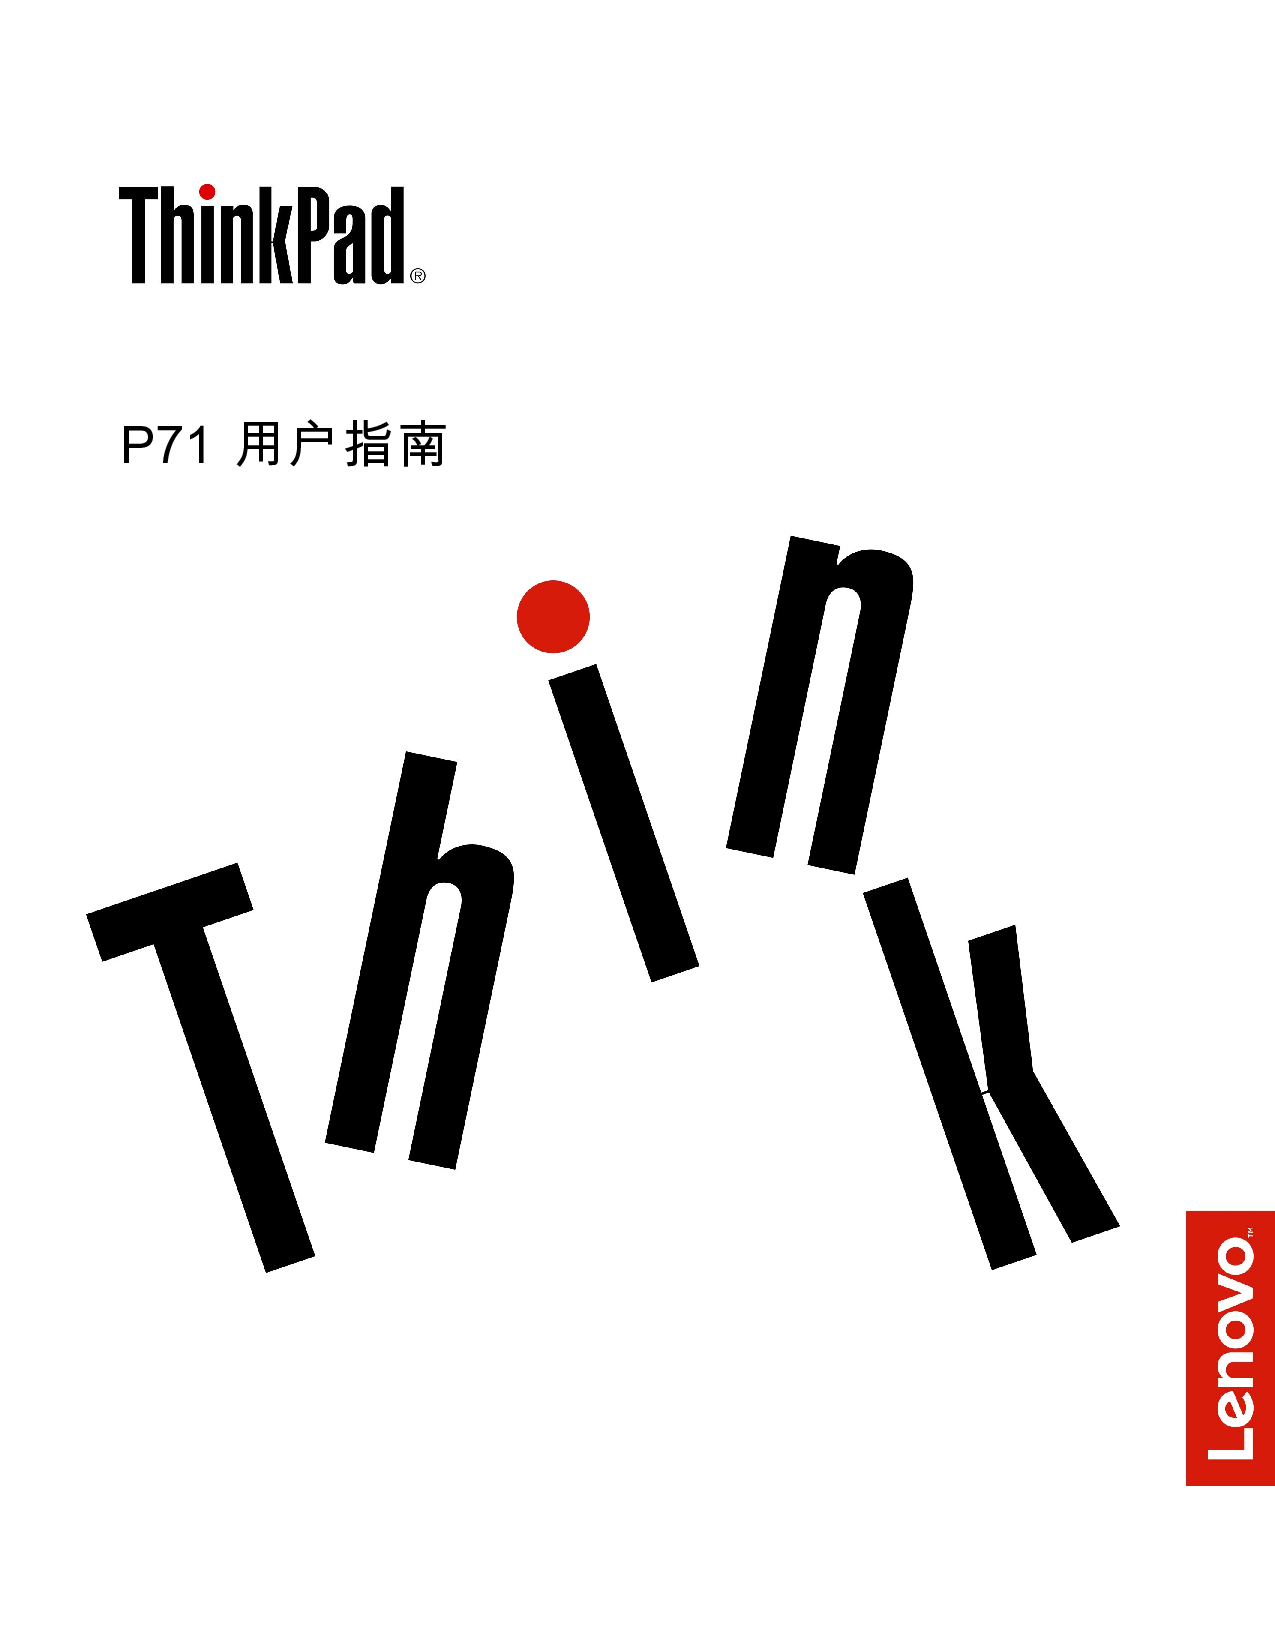 联想 Lenovo ThinkPad P71 用户指南 封面